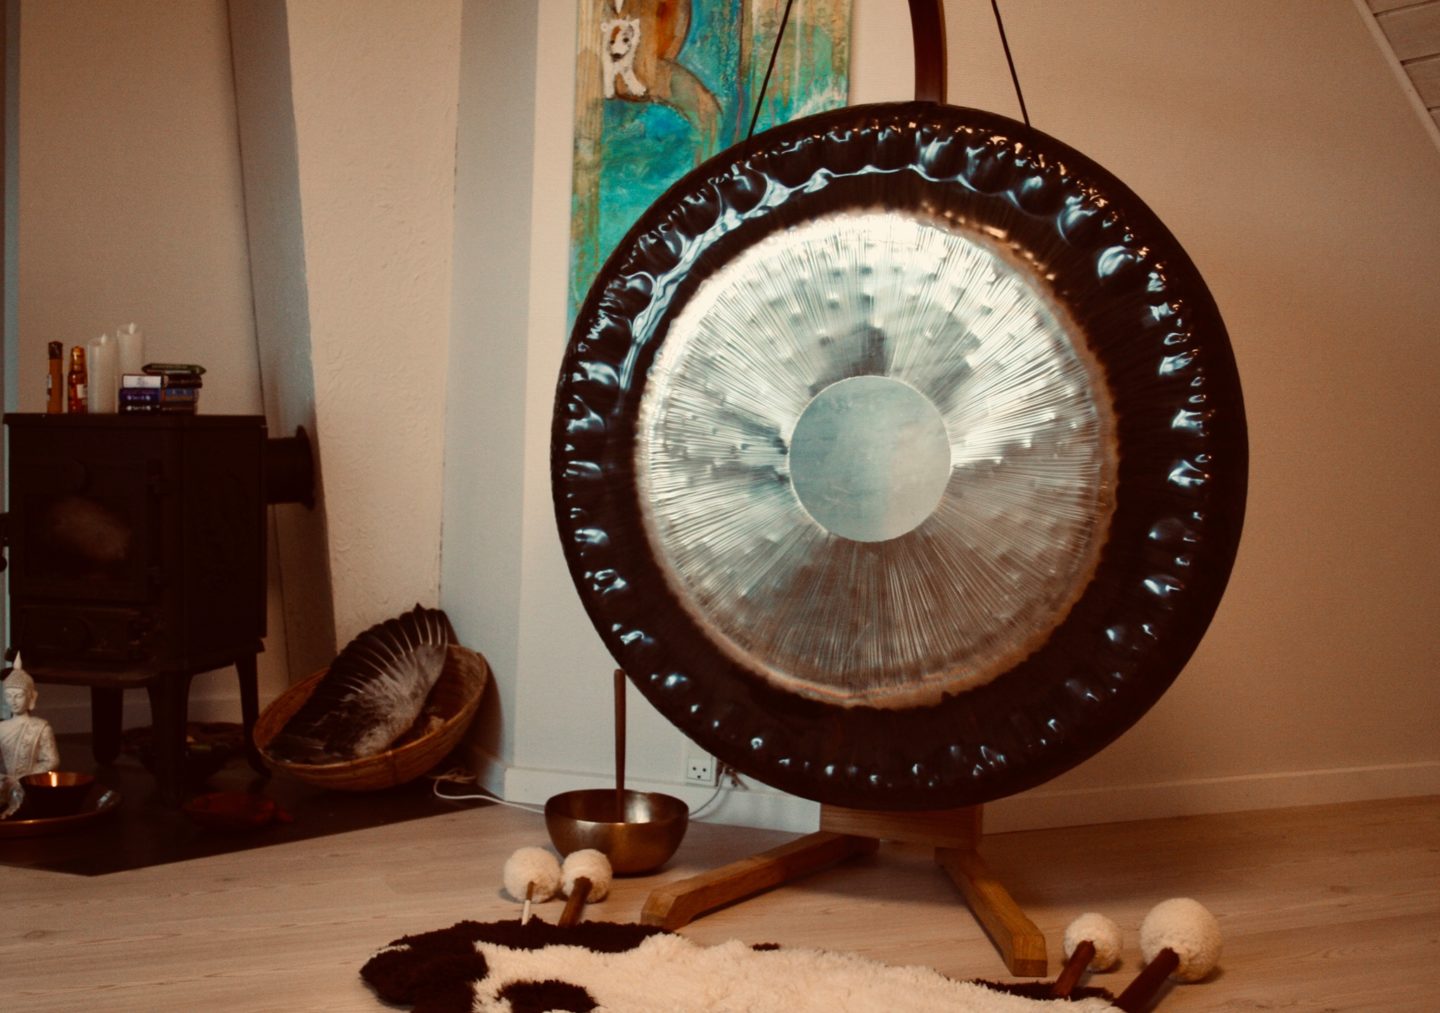 På workshoppen i Aarhus er gongbad en del af programmet. Her er et billede af den kæmpestore gong der kommer med på dagen.